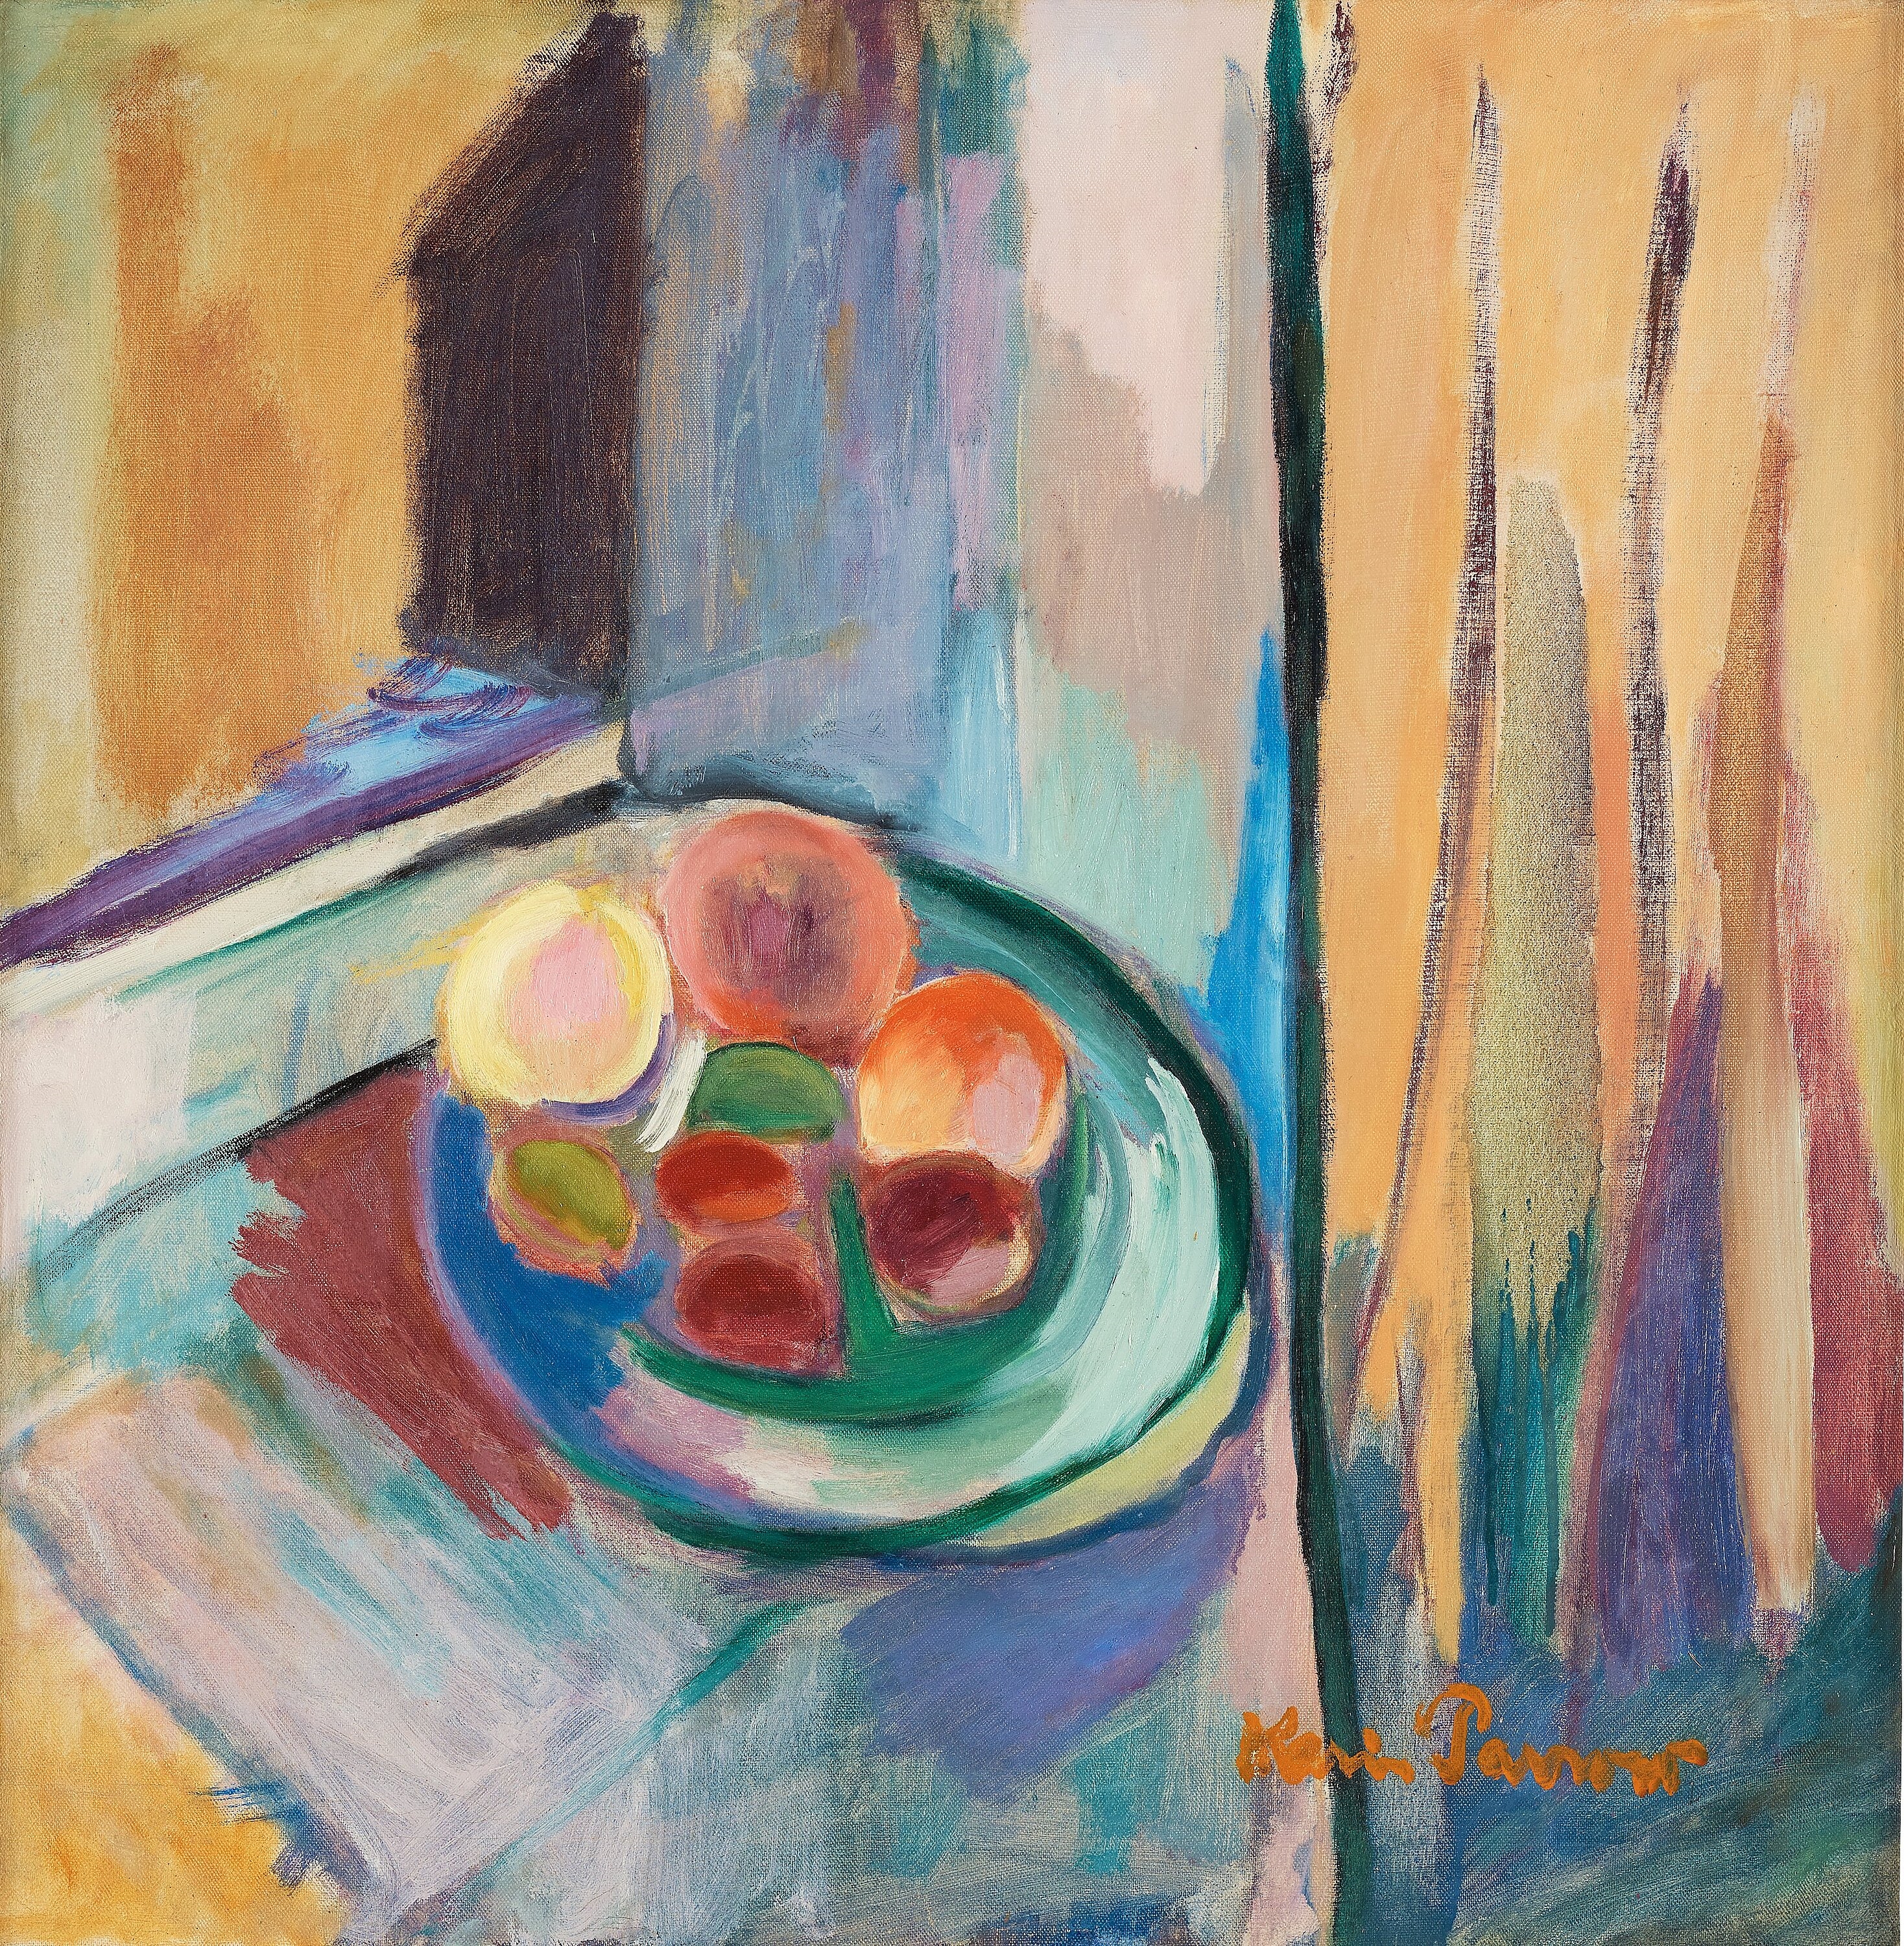 "Frukter vid fönstret" by Karin Parrow, dated 1954